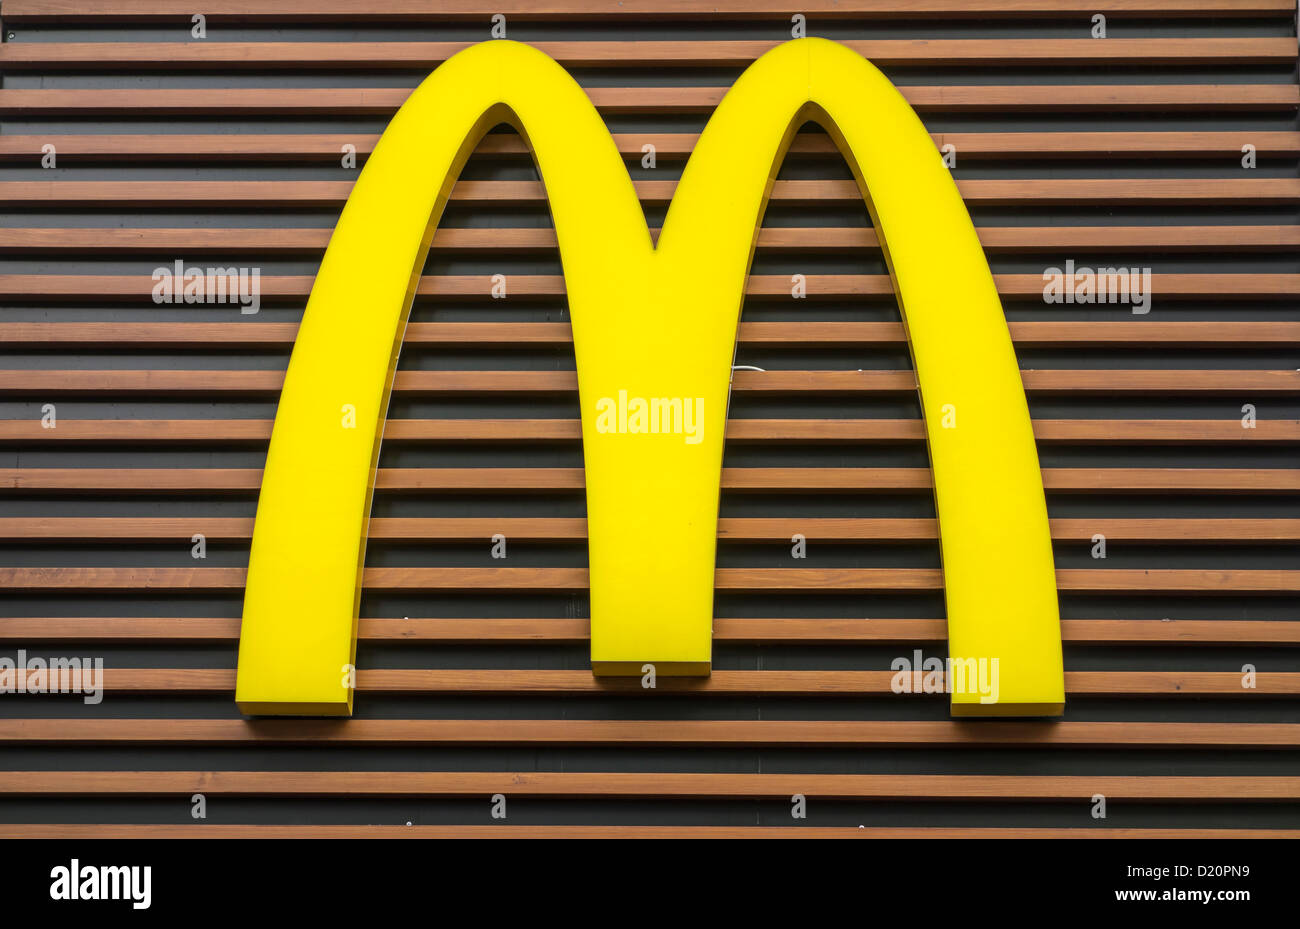 McDonald's logo on the wall Stock Photo